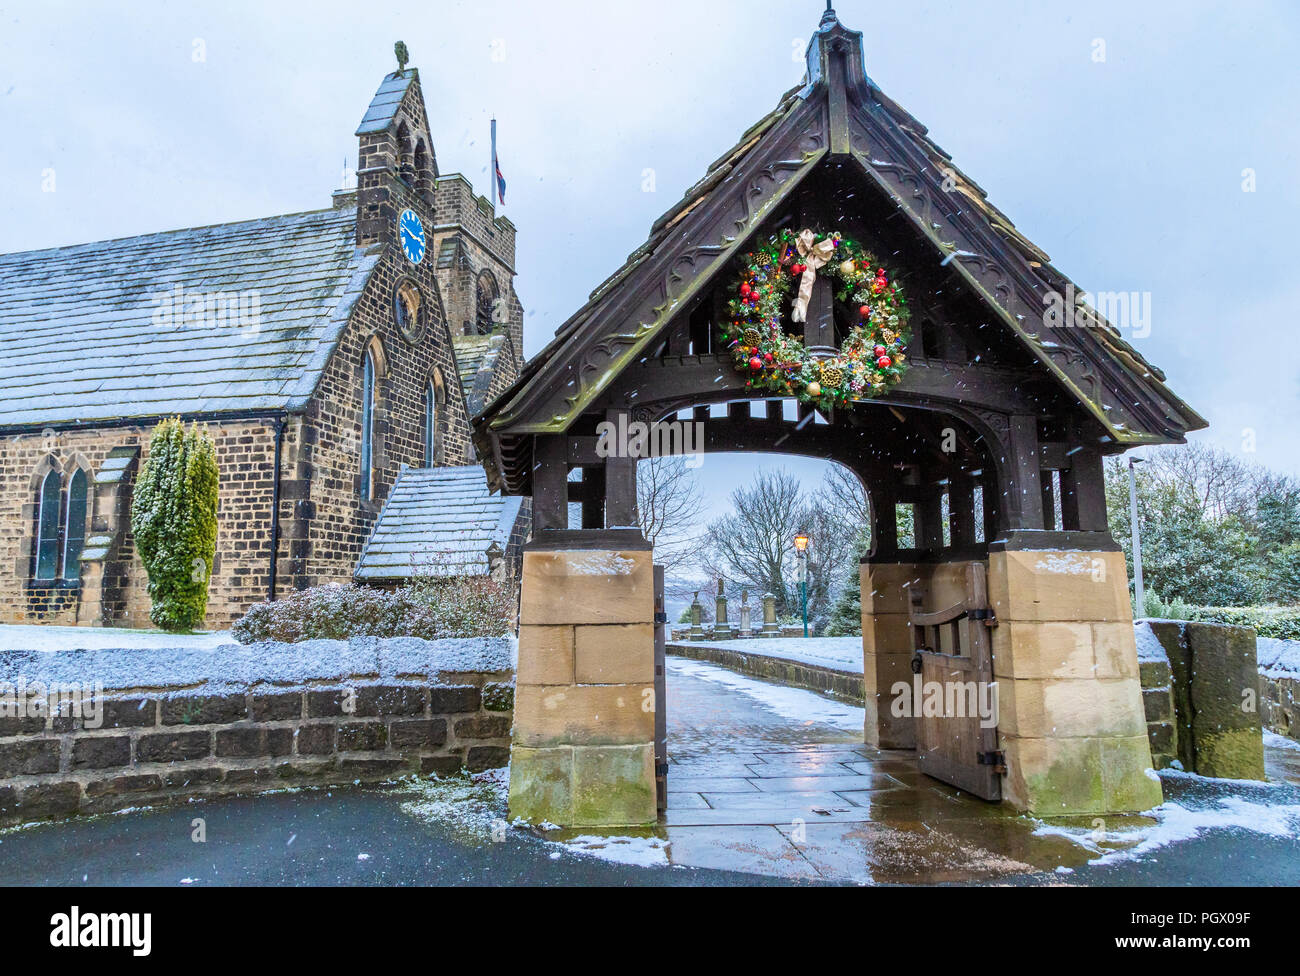 St John's Kirche, Baildon, Yorkshire, an Weihnachten. Eine dekorierte Kranz hängt über dem lychgate, das Foto wurde gemacht, als es schneite. Stockfoto